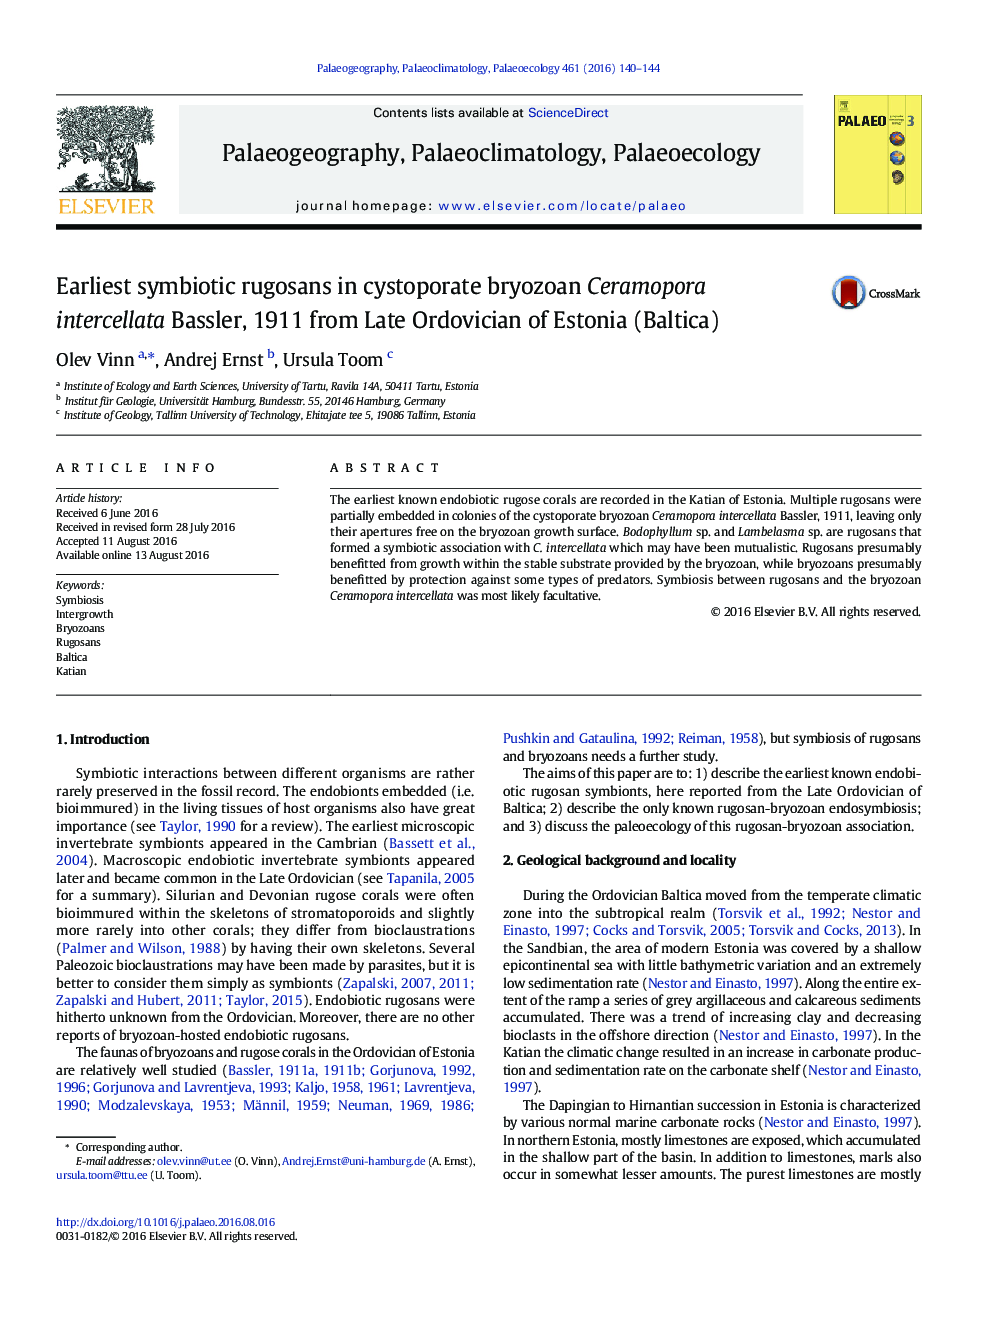 Earliest Symbiotic Rugosans In Cystoporate Bryozoan Ceramopora